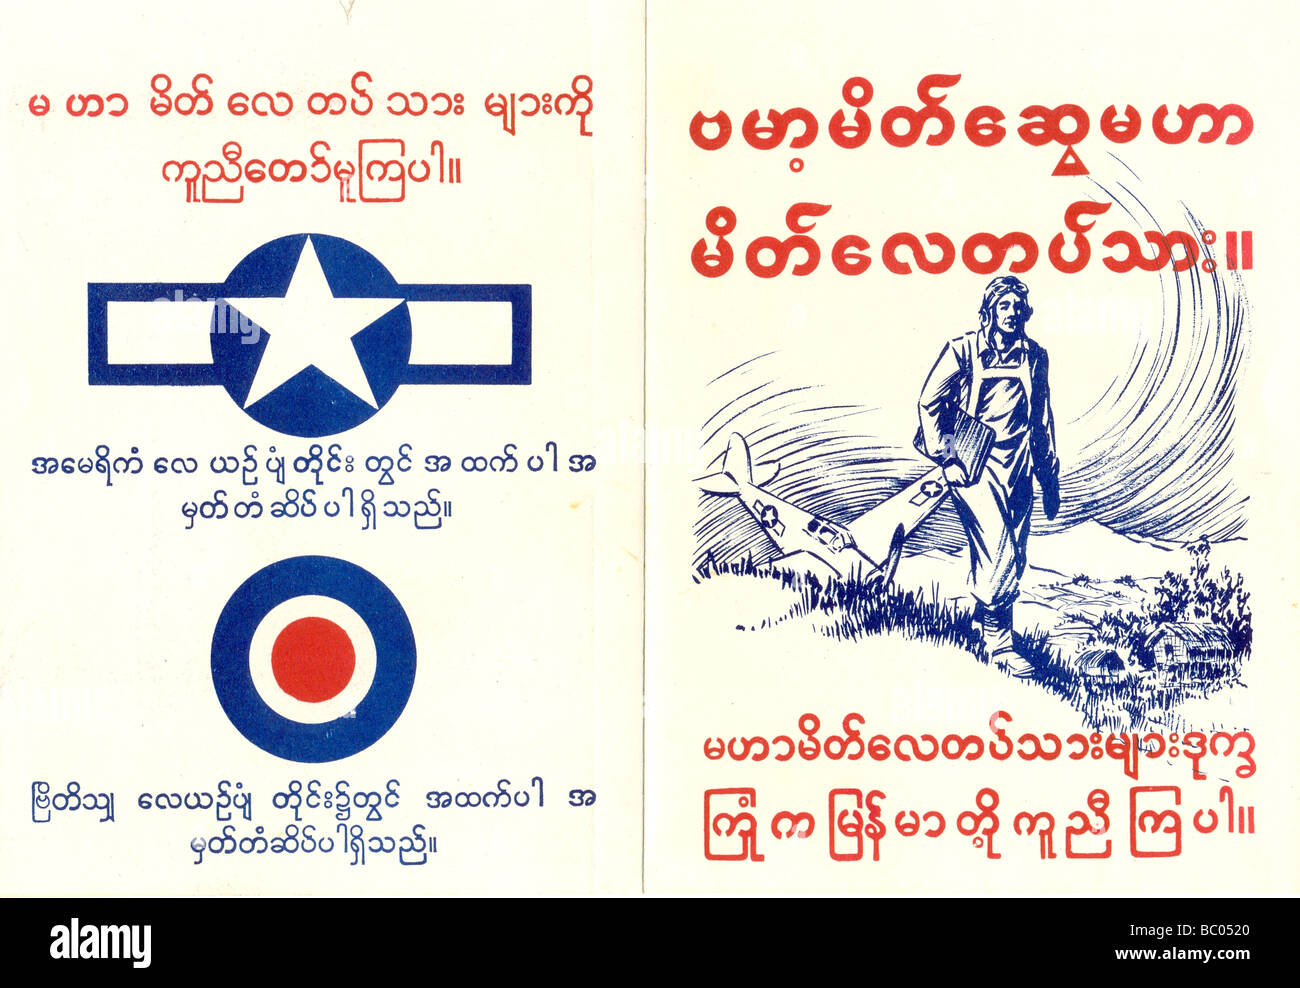 WW2 foglietto portati dagli aviatori la richiesta di aiuto da parte di abitanti locali in caso di crash in Birmania 1941 Foto Stock